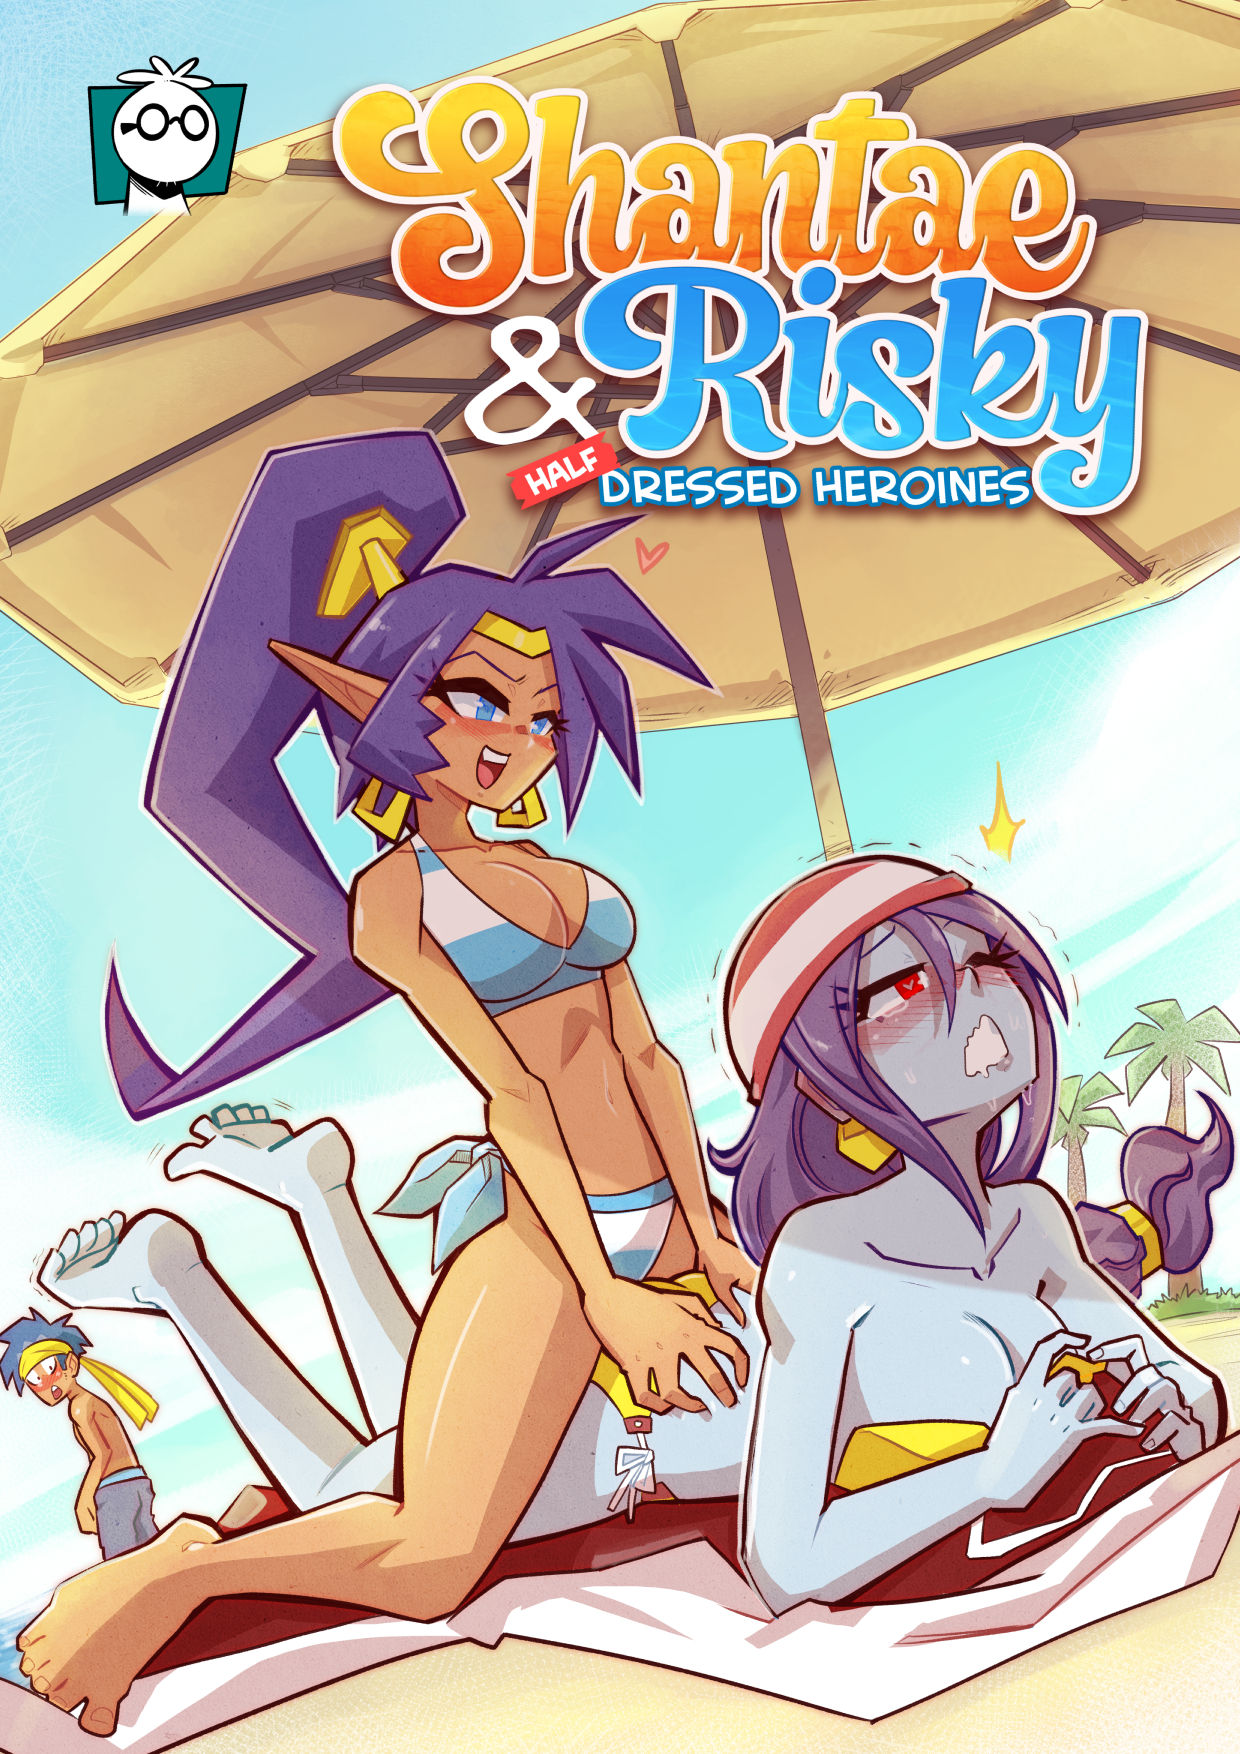 Half Dressed Porn Home - Shantae & Risky Half Dressed Heroines - Mr E - KingComiX.com